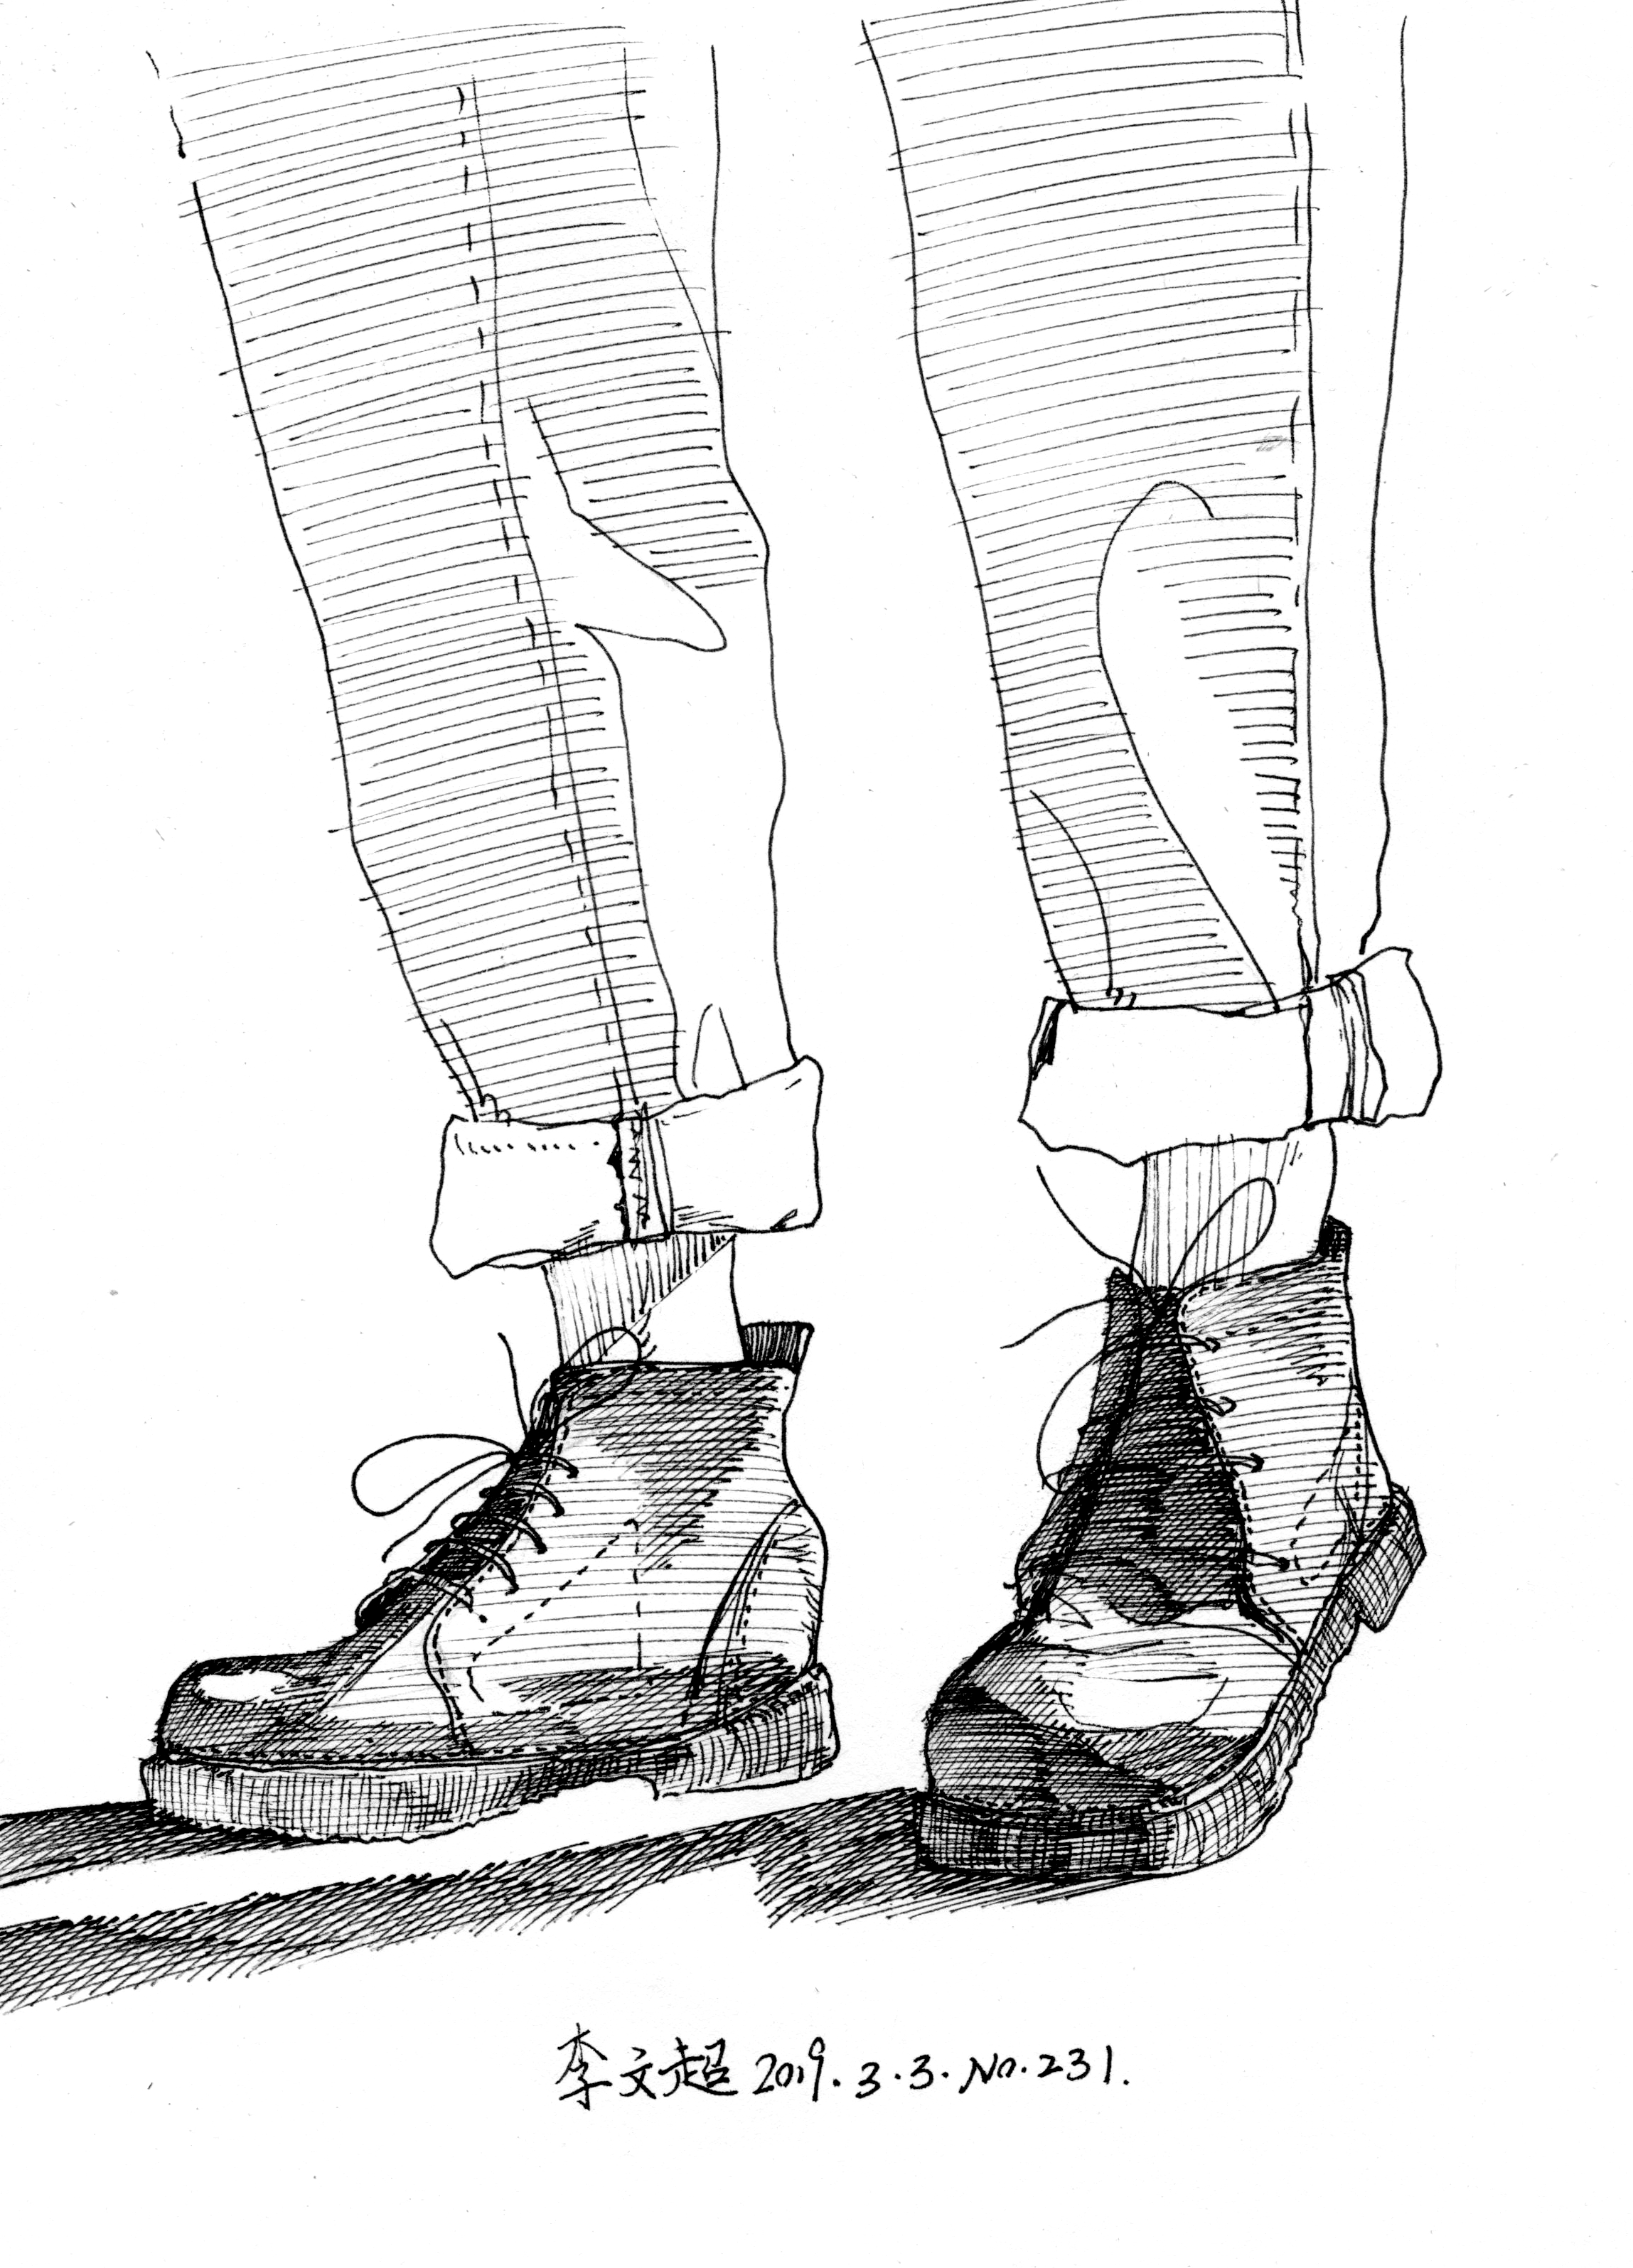 李文超的钢笔漫画第231次作品牛仔裤和马丁靴